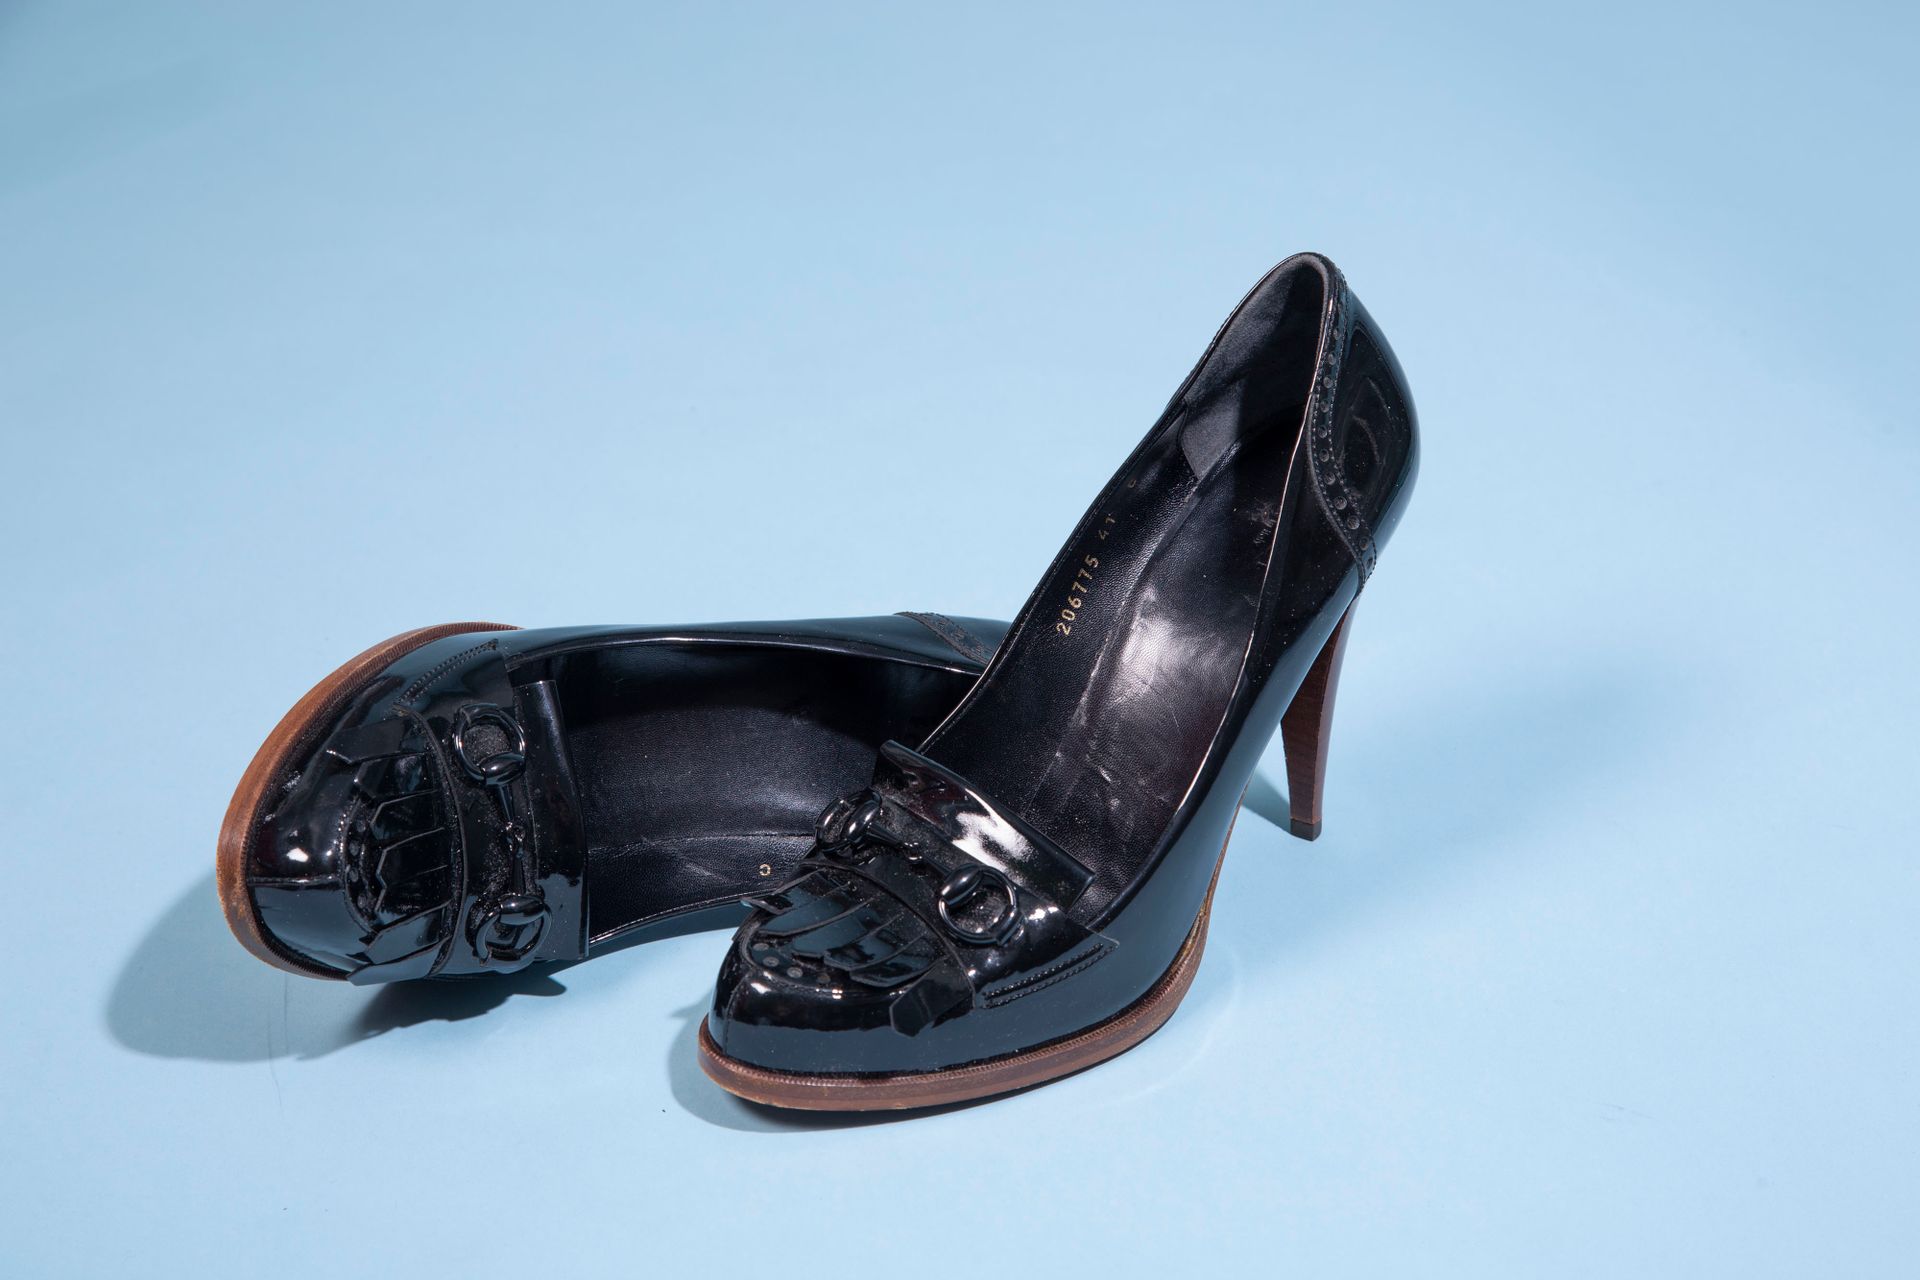 Null GUCCI。
一双黑色漆皮软皮鞋，高跟鞋模仿木头。 
尺寸：41 C - 高度（鞋跟）：12厘米
附带包装盒。